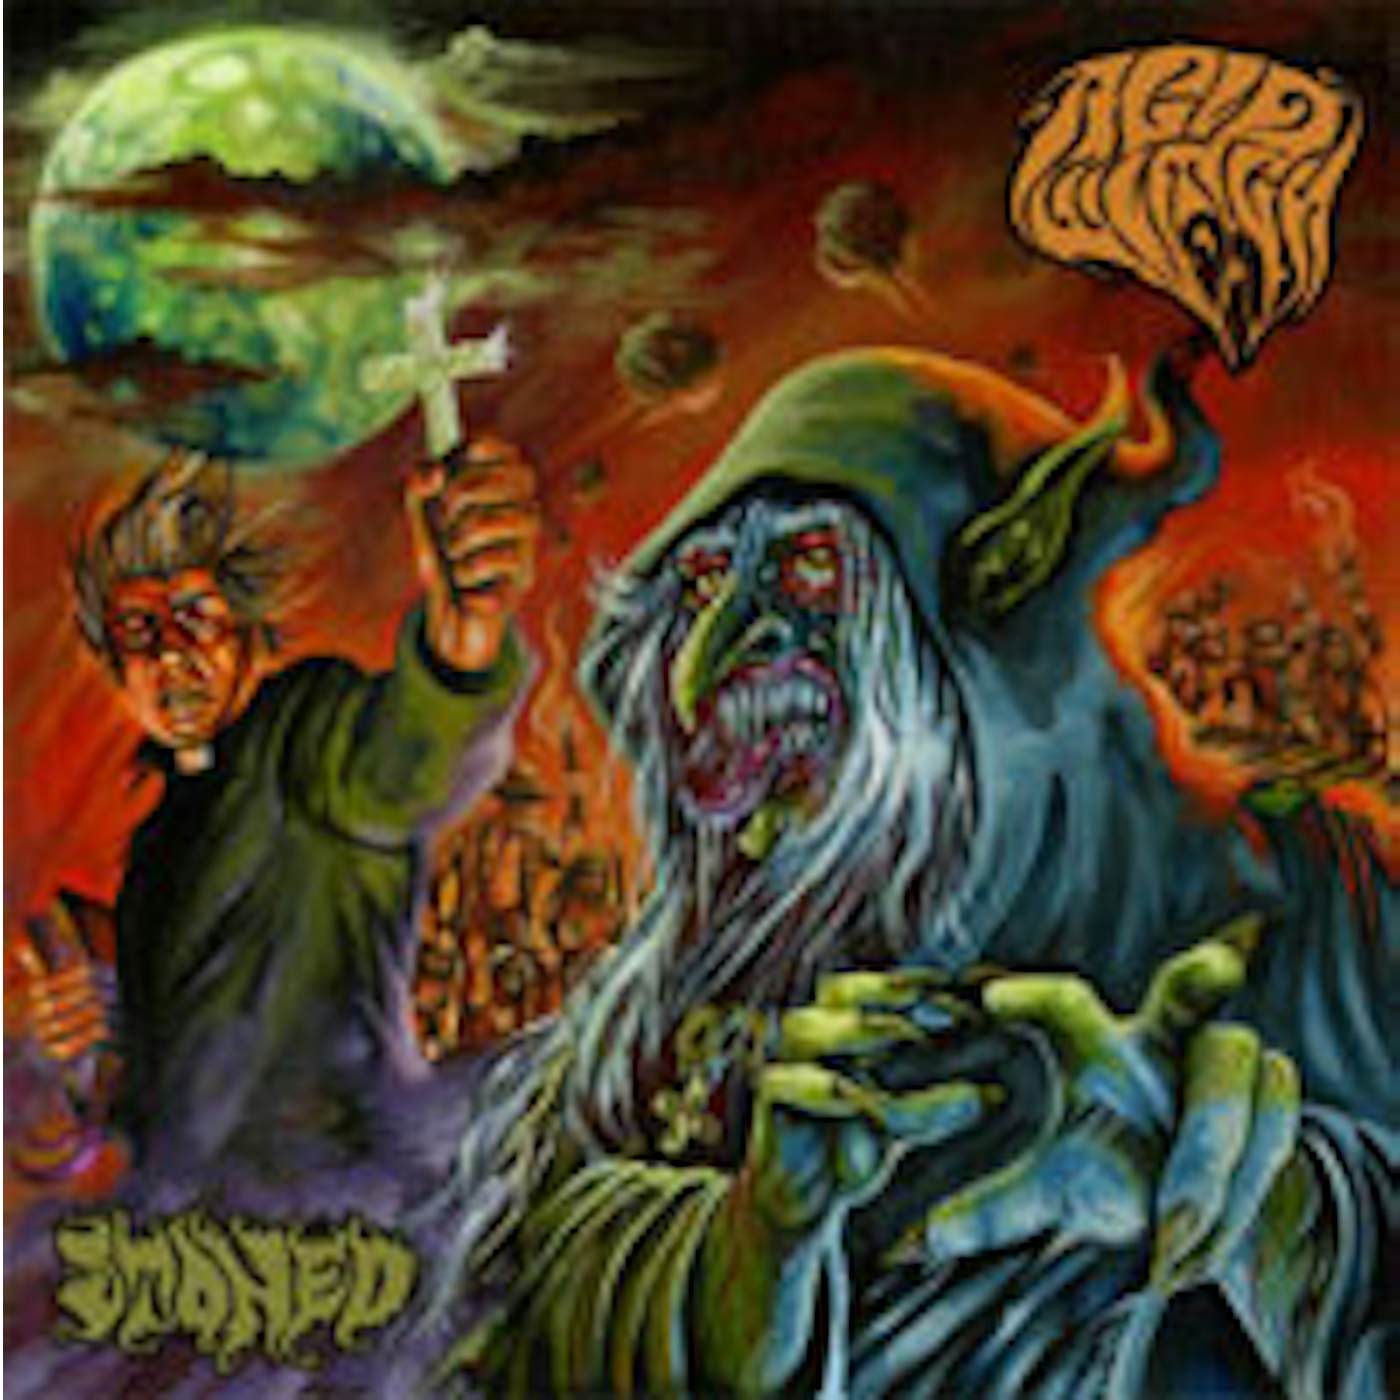  Acid Witch LP - Stoned (Vinyl)